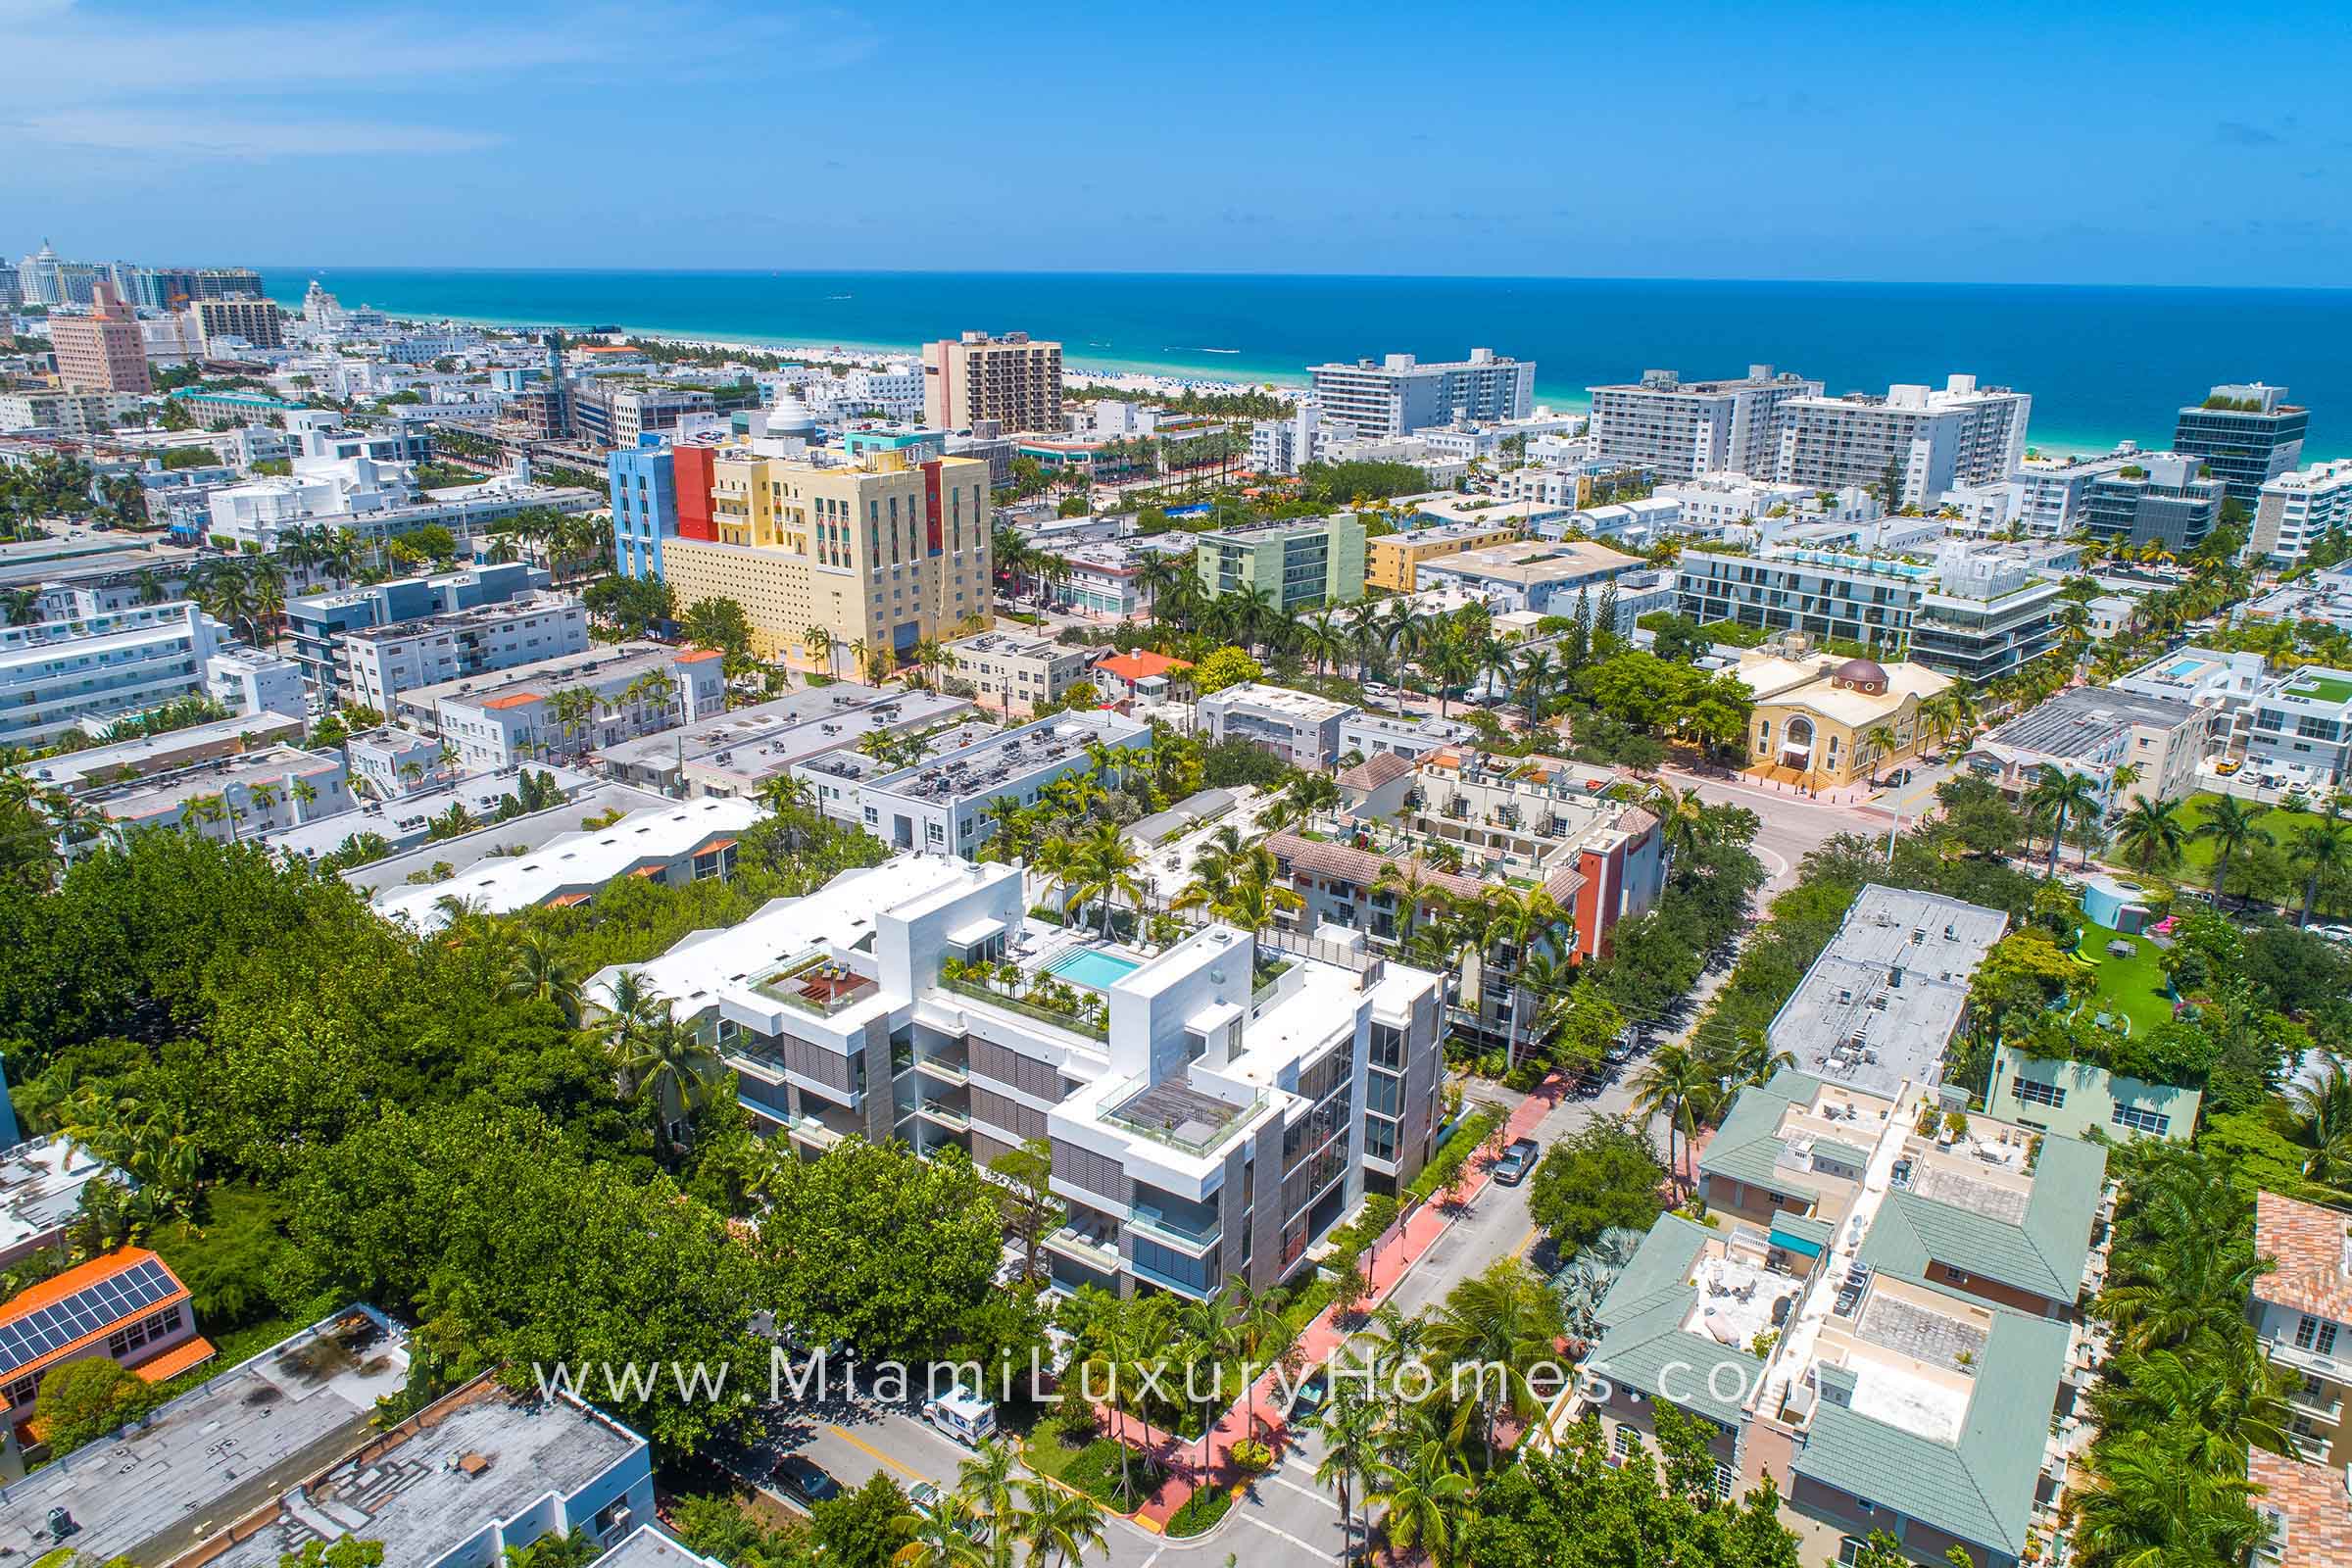 Louver House Condos Miami Beach